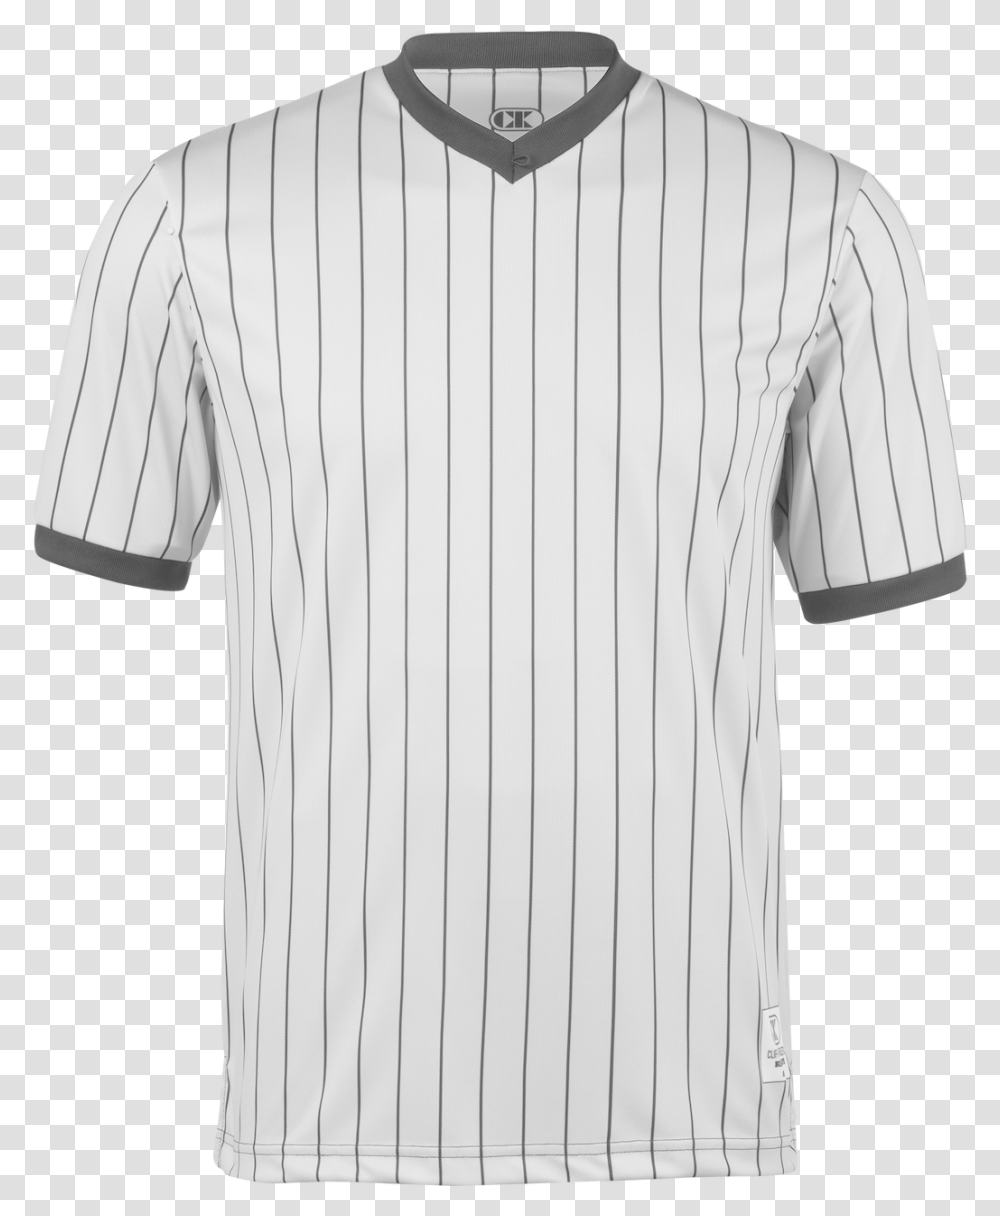 Cliff Keen Grey Ultra Mesh Referee Shirt Baseball Uniform, Apparel, Jersey, Dress Shirt Transparent Png